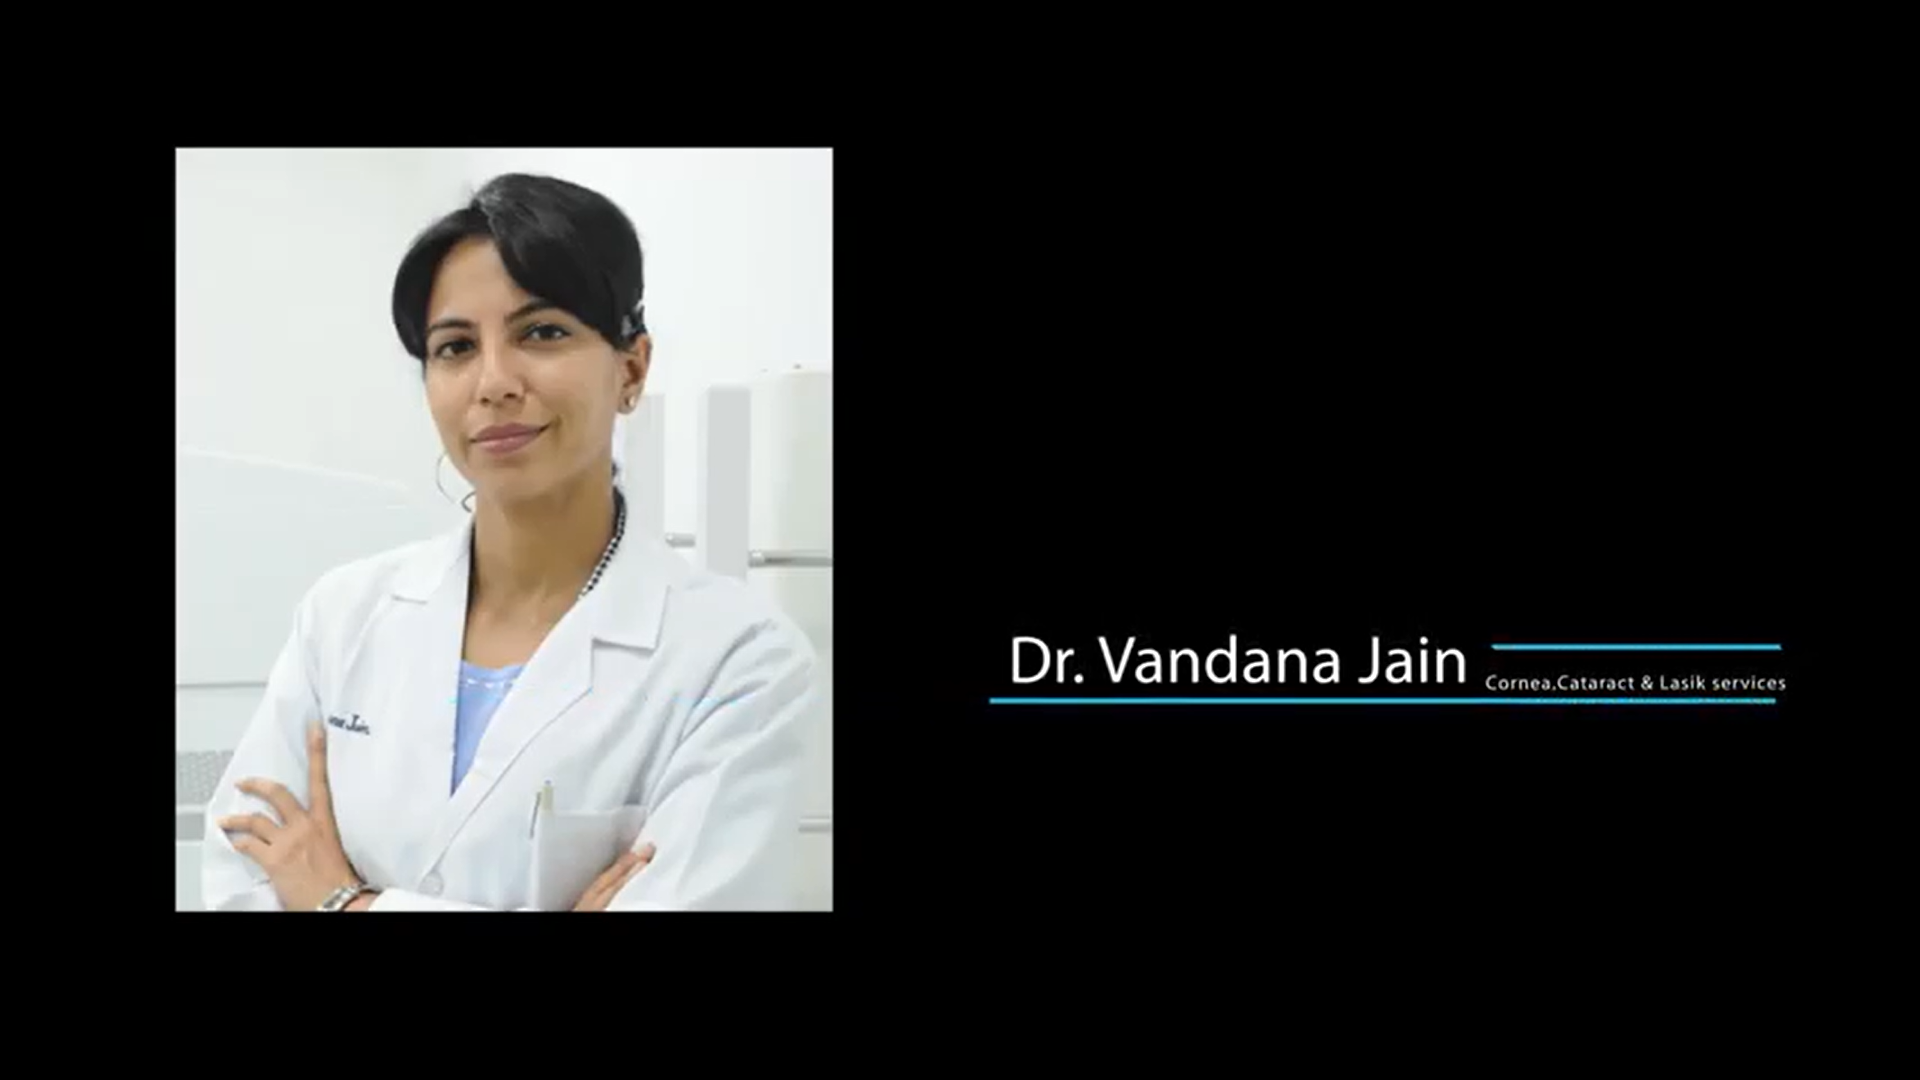 डॉक्टर बोले: लेसिक सर्जरी के बाद रिकवरी/सावधानियां | डॉ अग्रवाल नेत्र चिकित्सालय